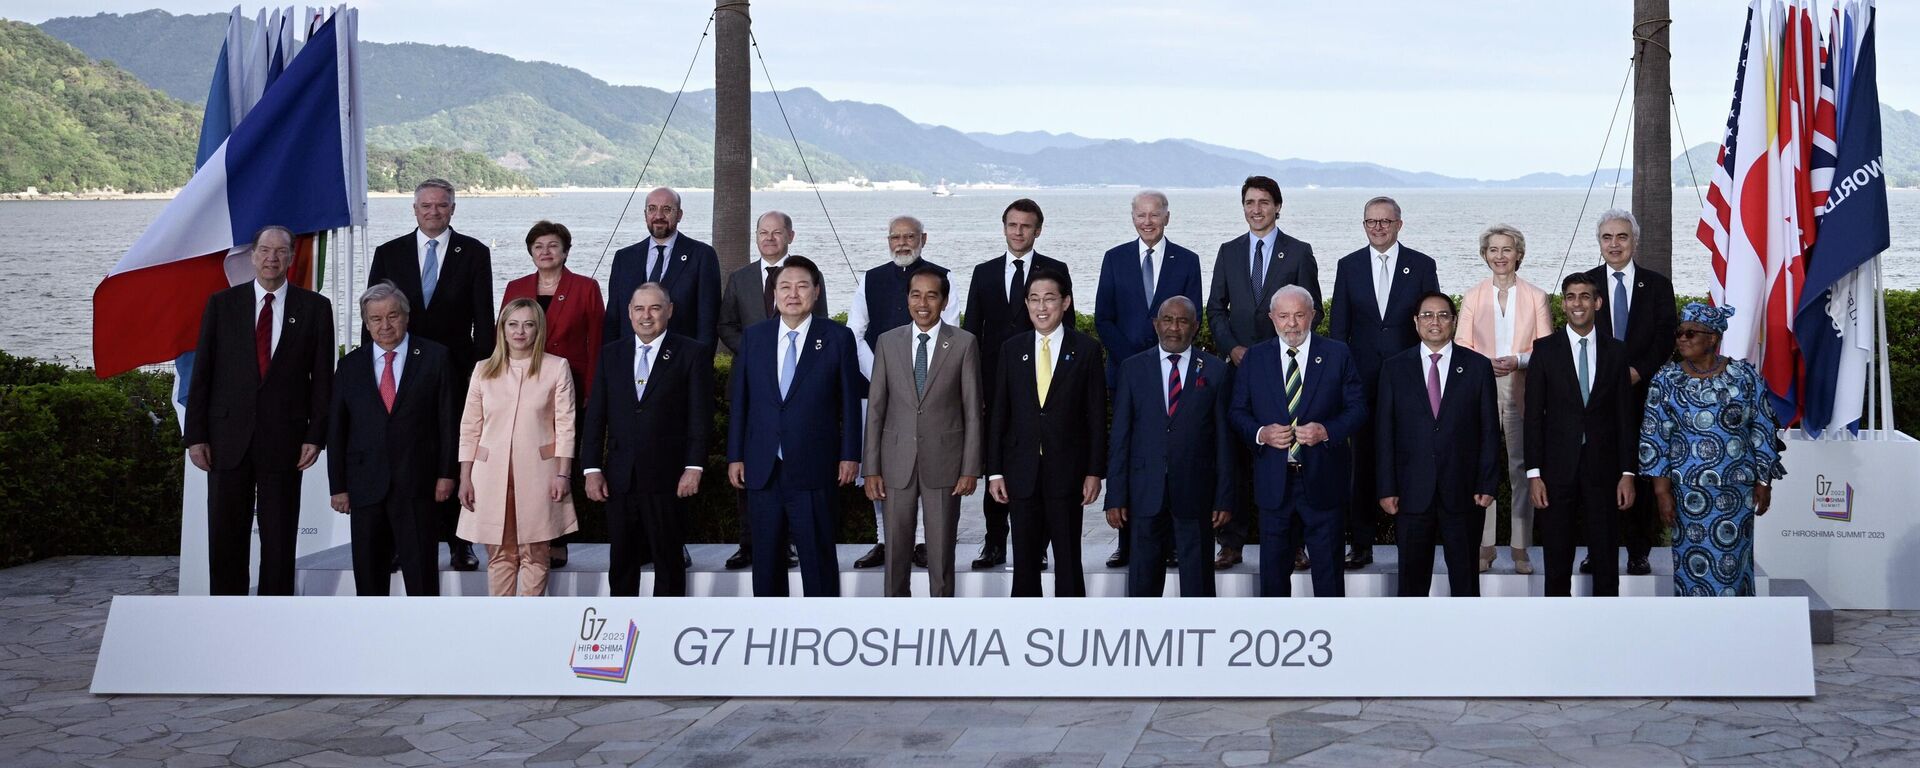 Саммит лидеров G7 в Хиросиме - Sputnik Кыргызстан, 1920, 20.05.2023